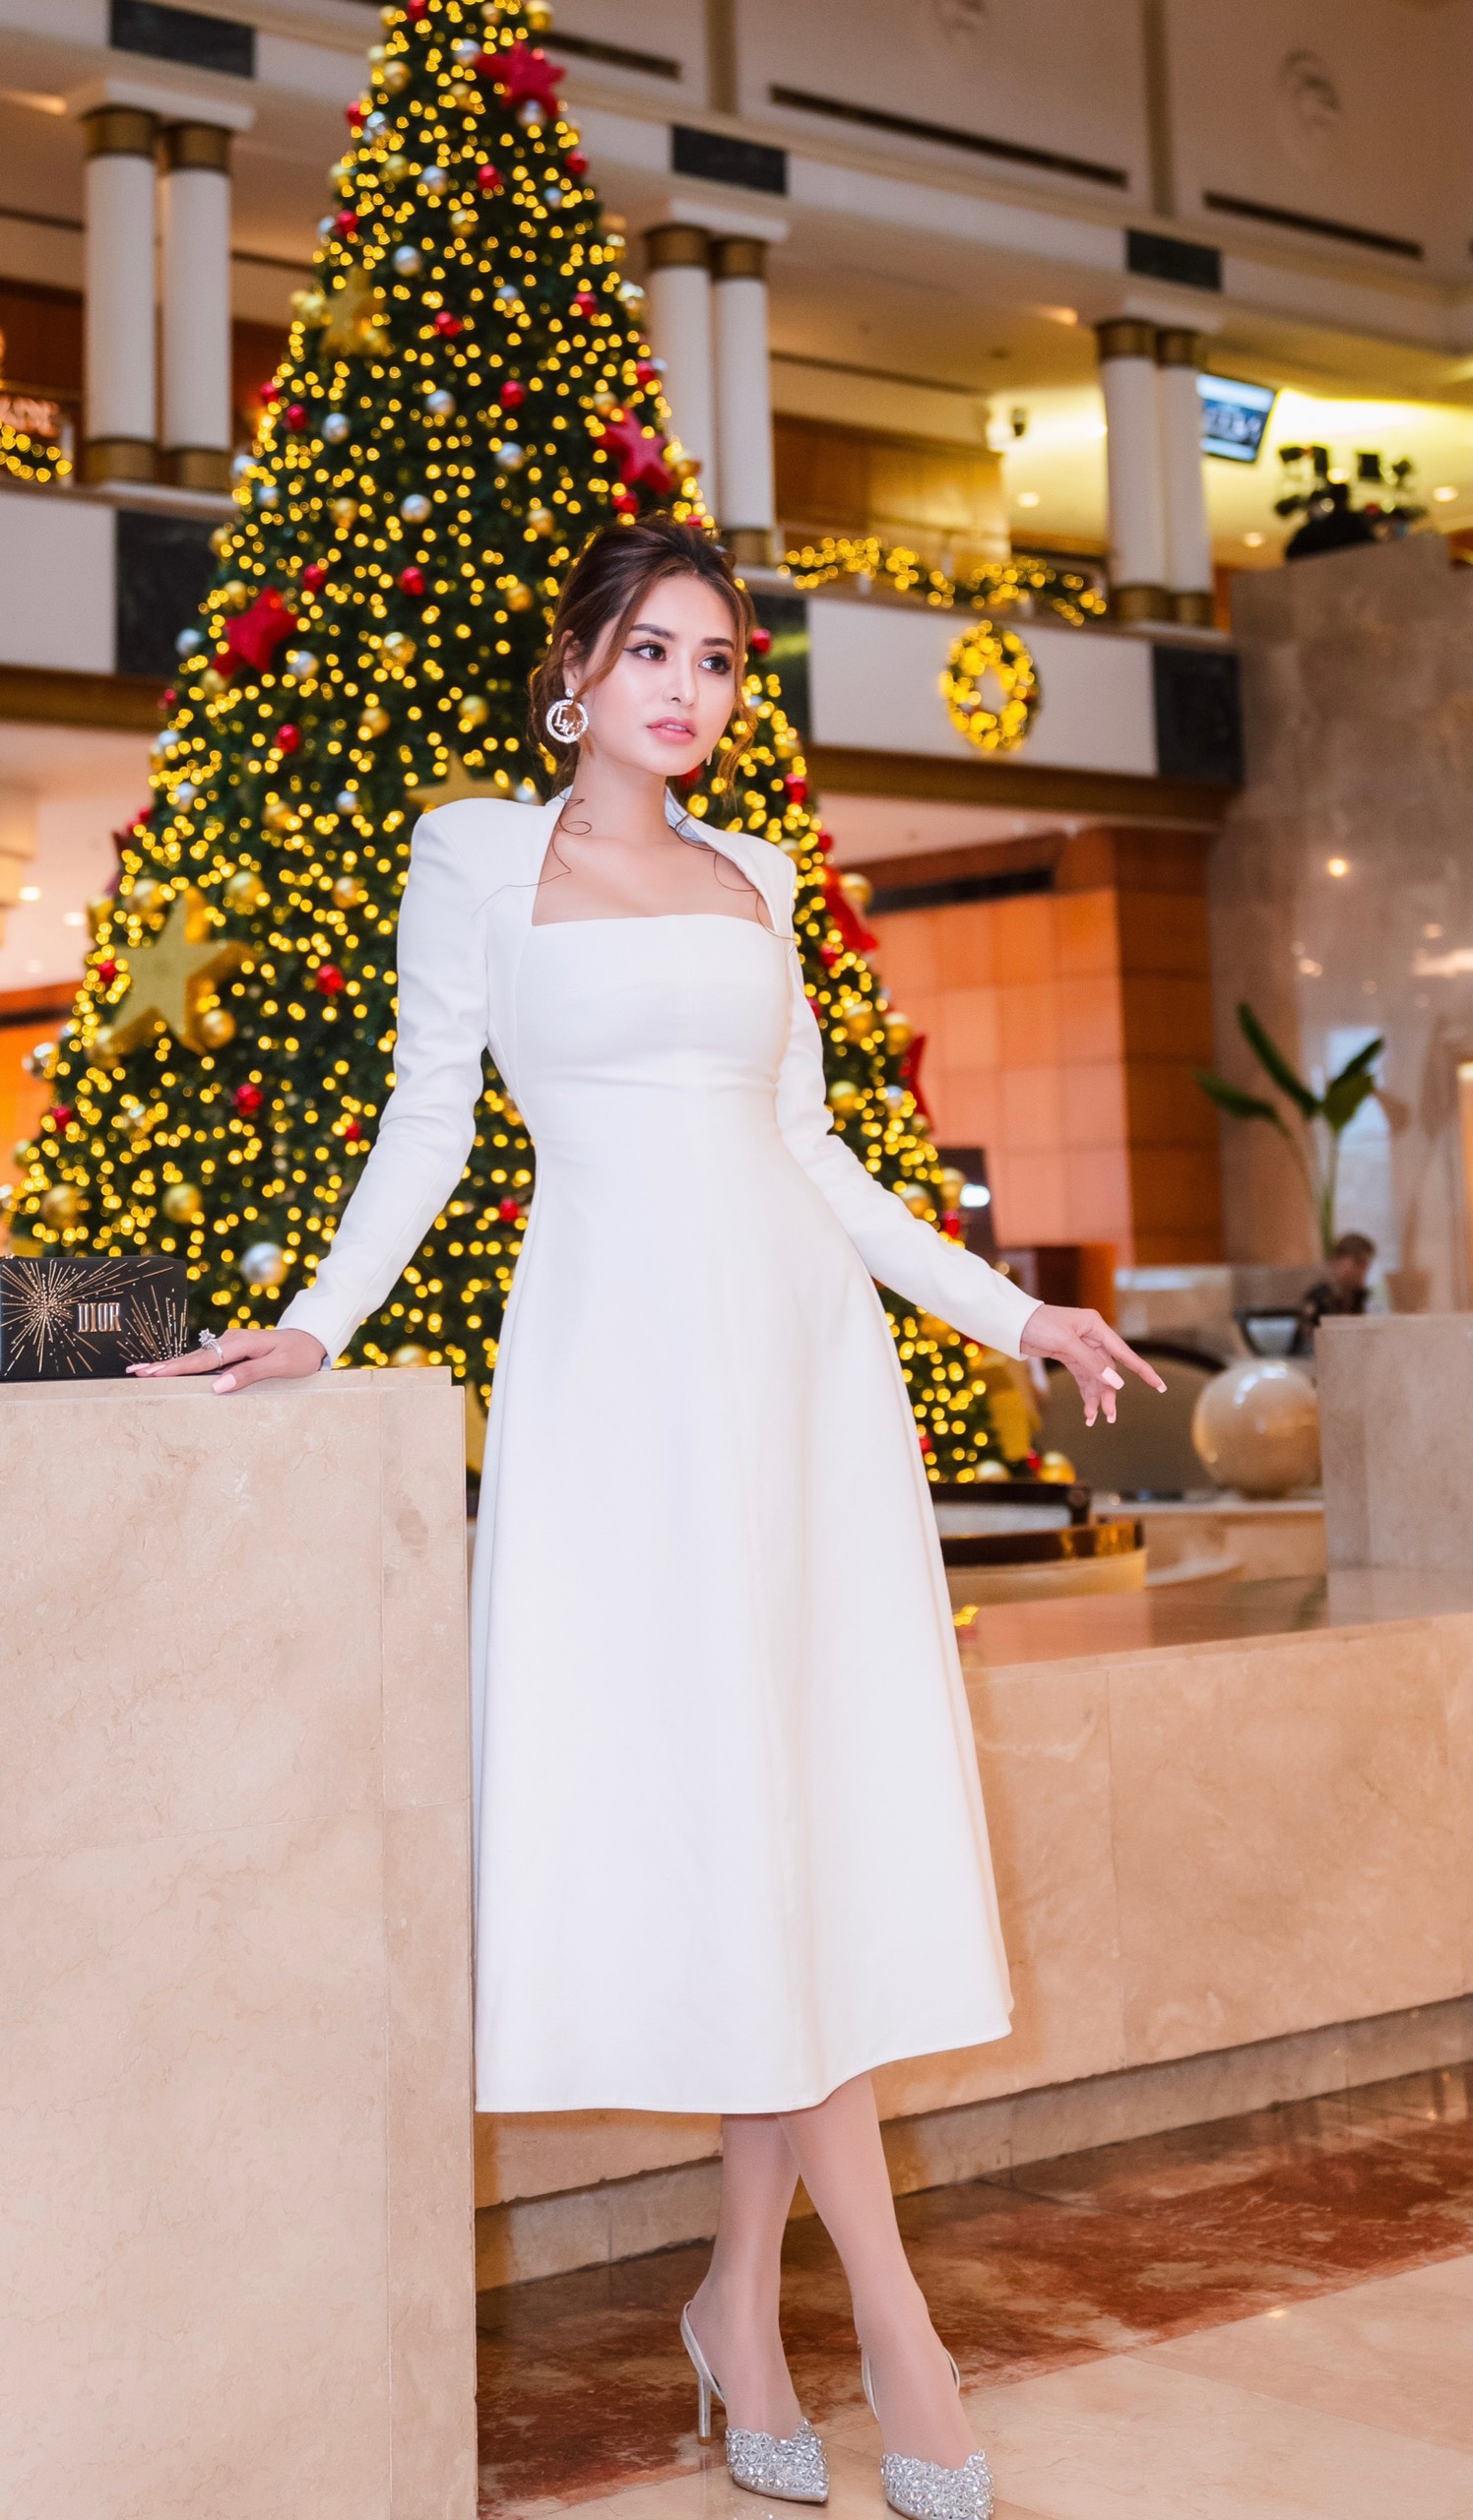 Hoa hậu Di Khả Hân nổi bật tại sự kiện khi lựa chọn trang phục đầm trắng kết hợp cùng phụ kiện dày cao gót đính đá lập lánh, điểm cộng là chiếc ví đến từ thương hiệu Dior phiên bản mùa lễ hội.